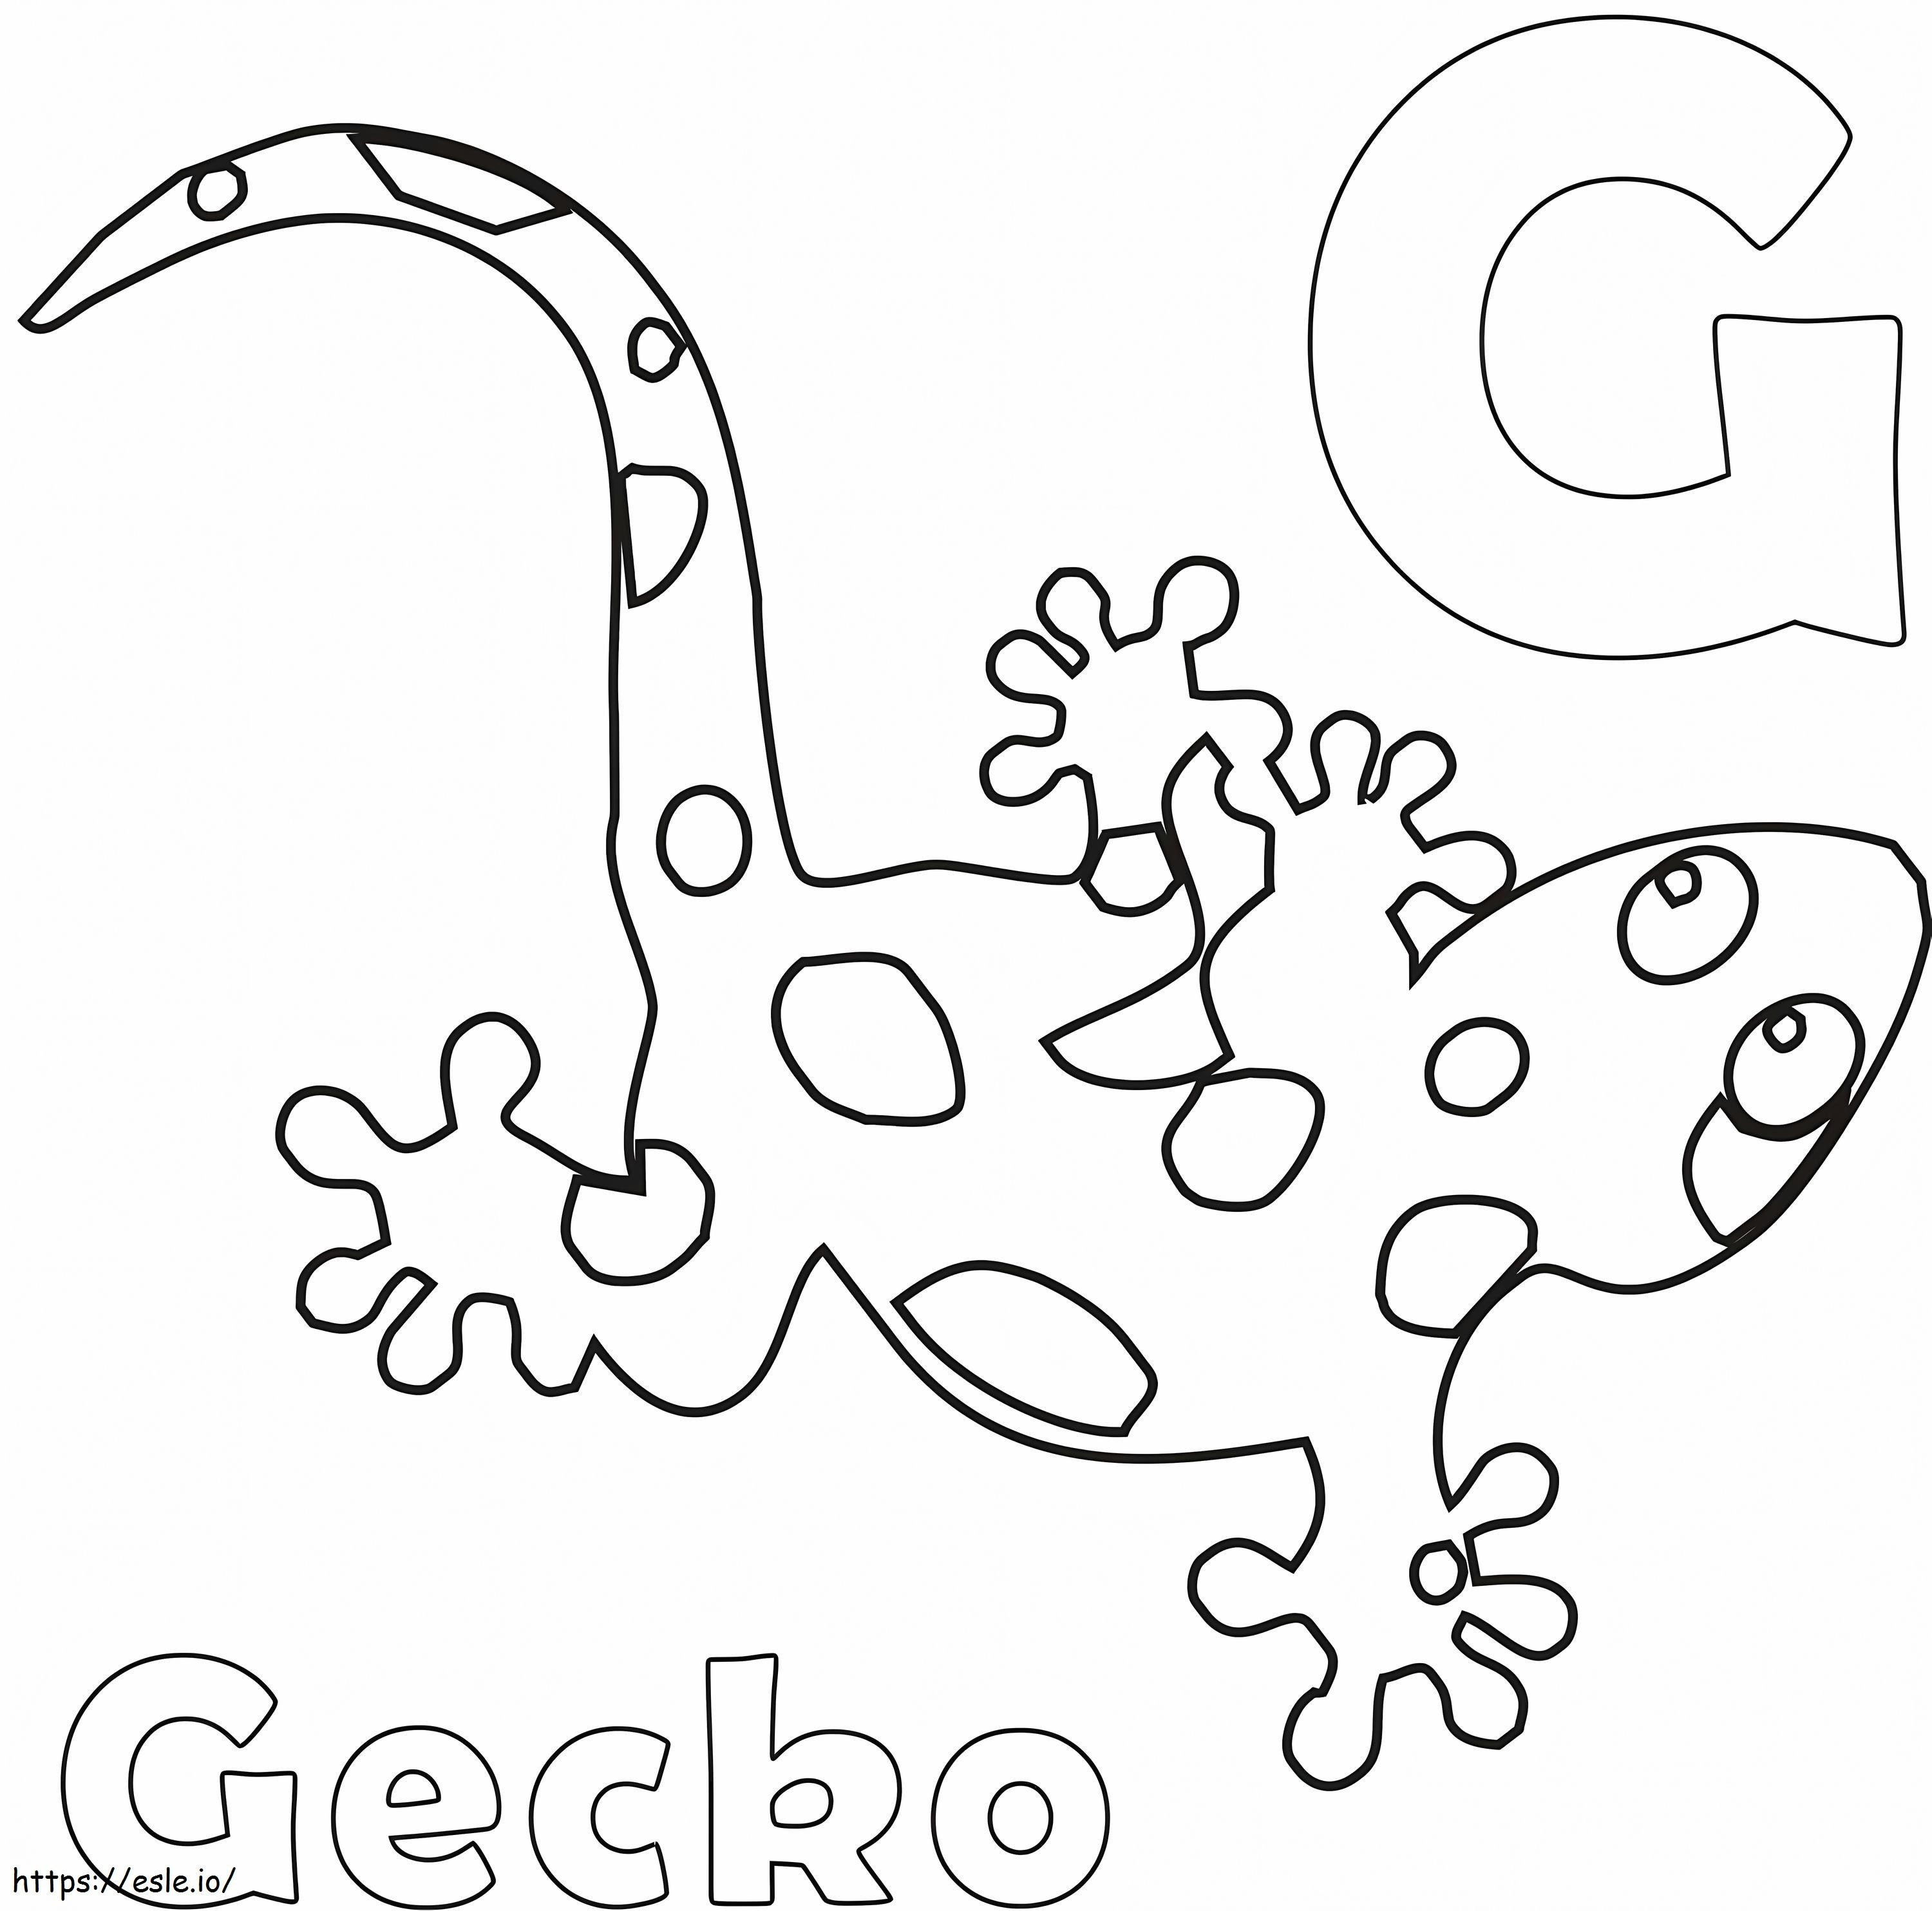 Letra G e lagartixa para colorir